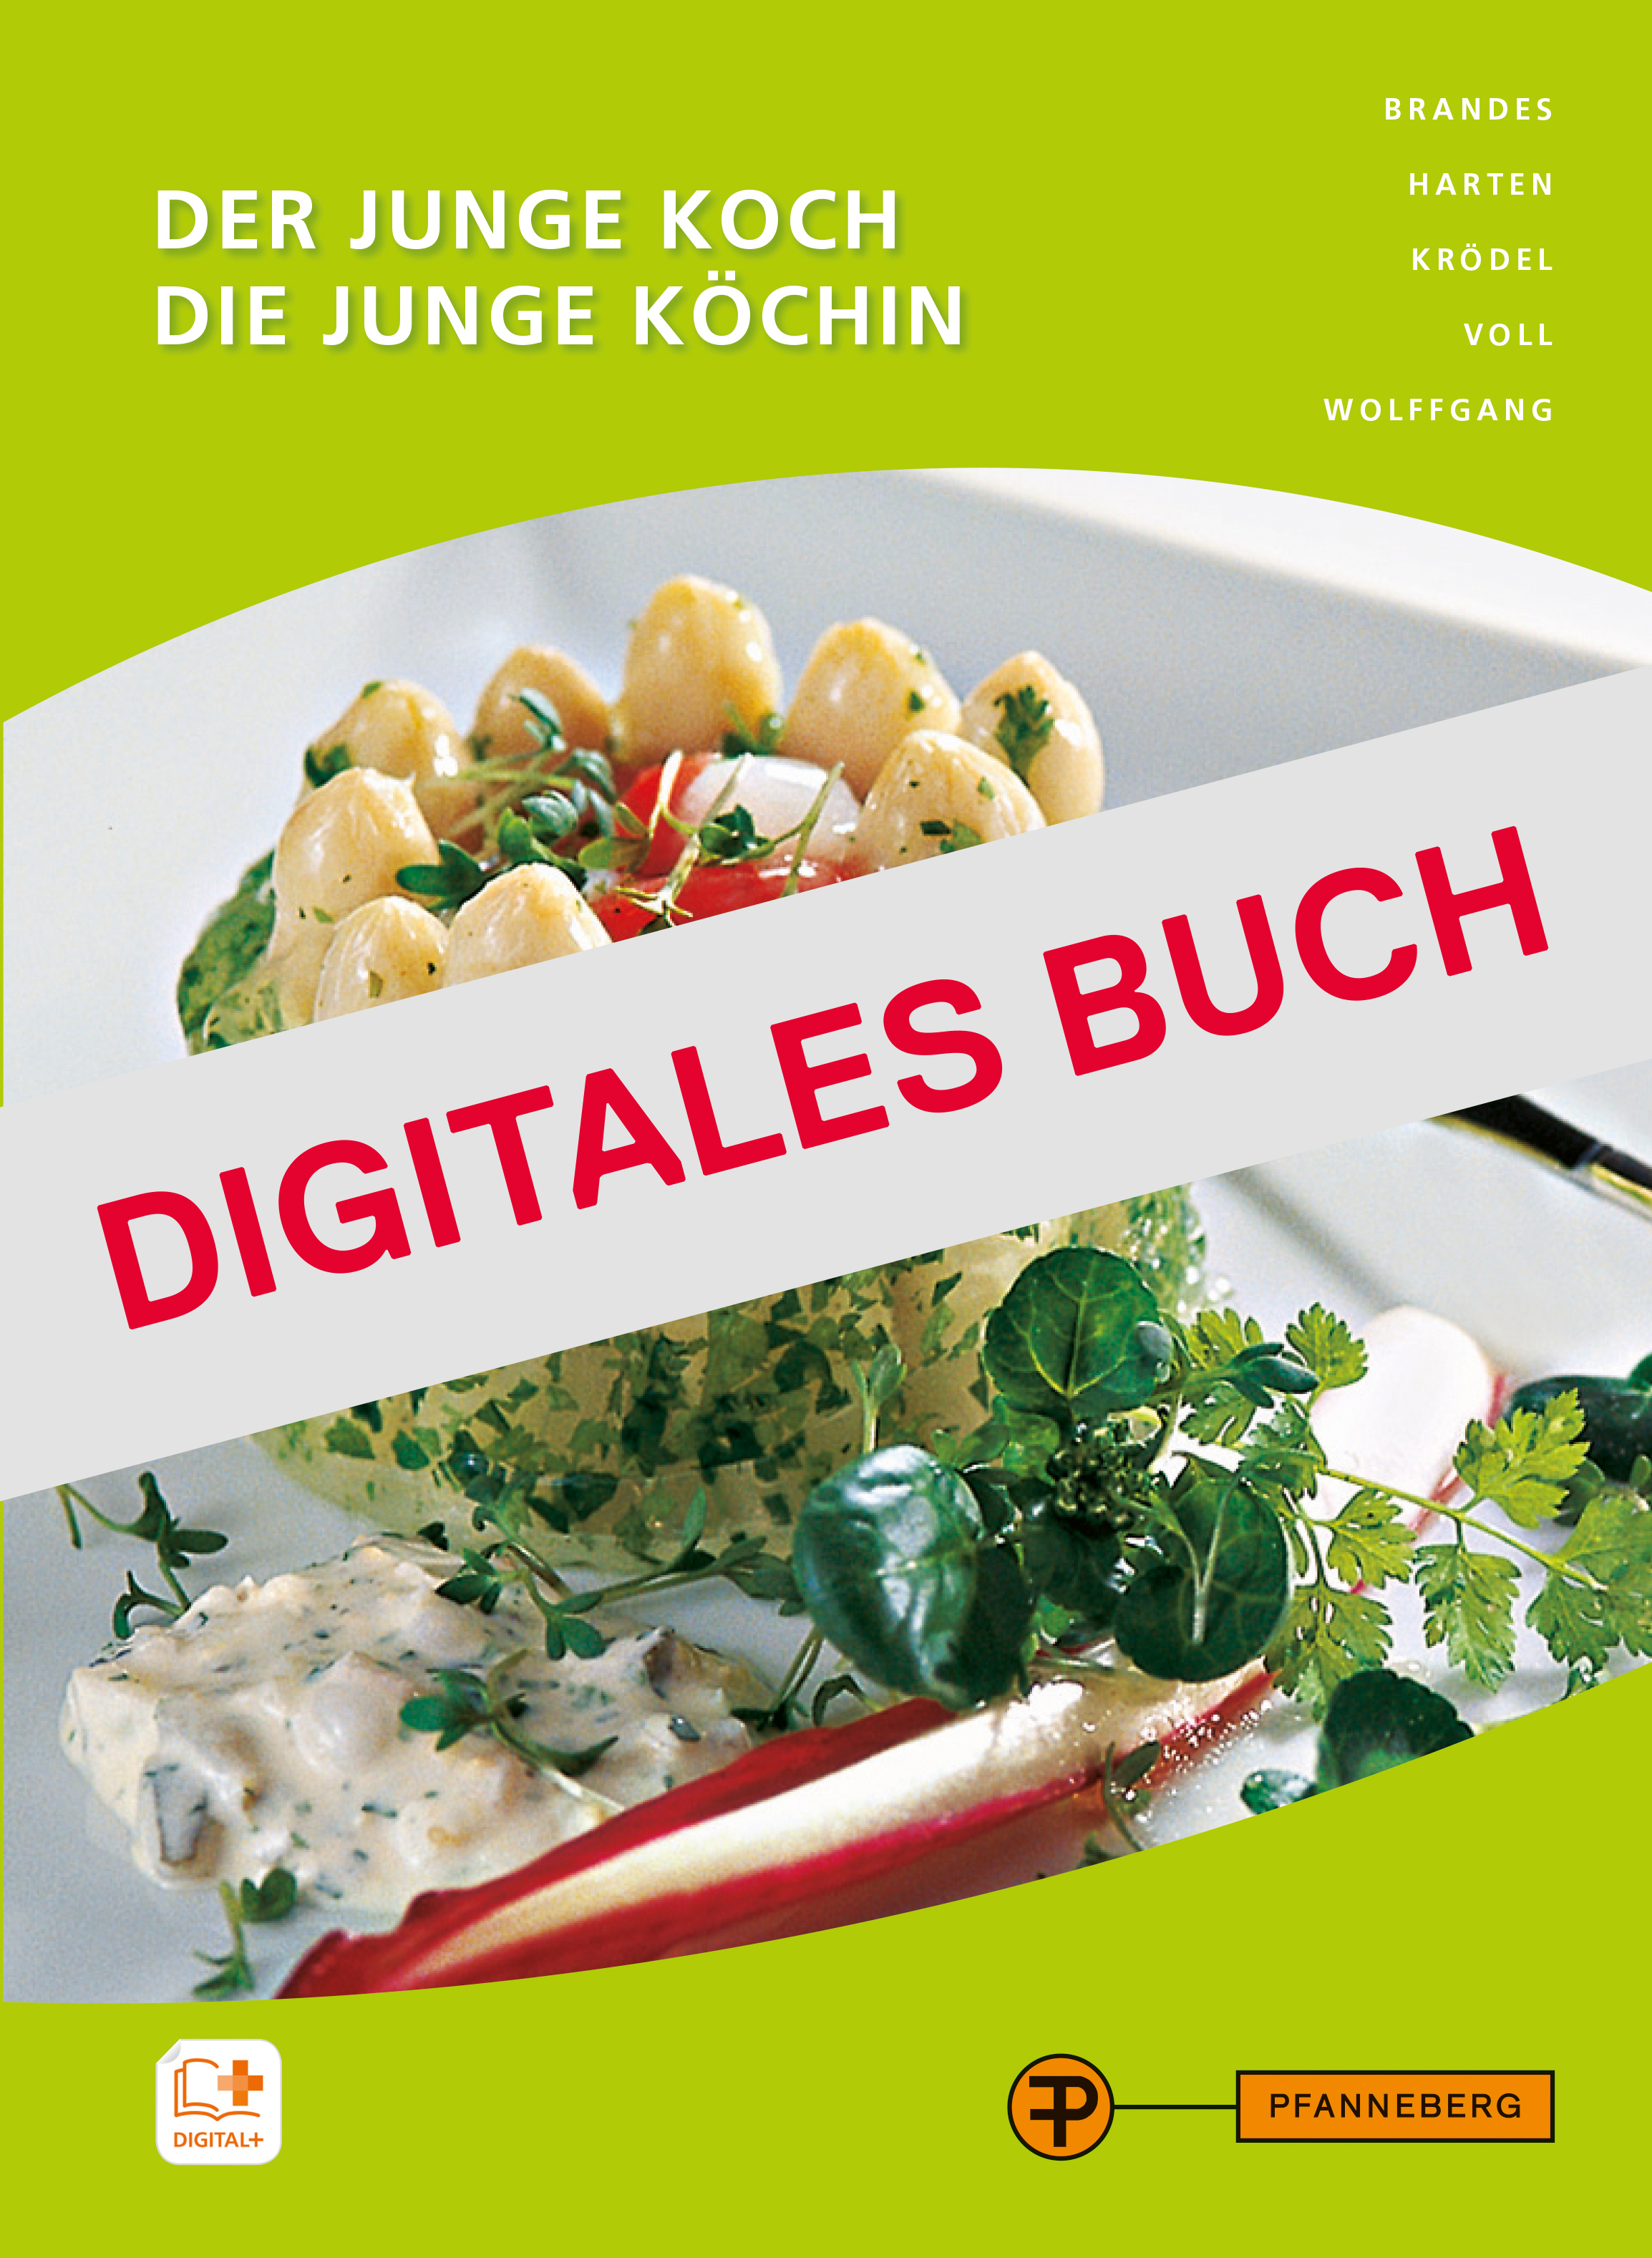 Der junge Koch/Die junge Köchin - Digitales Buch